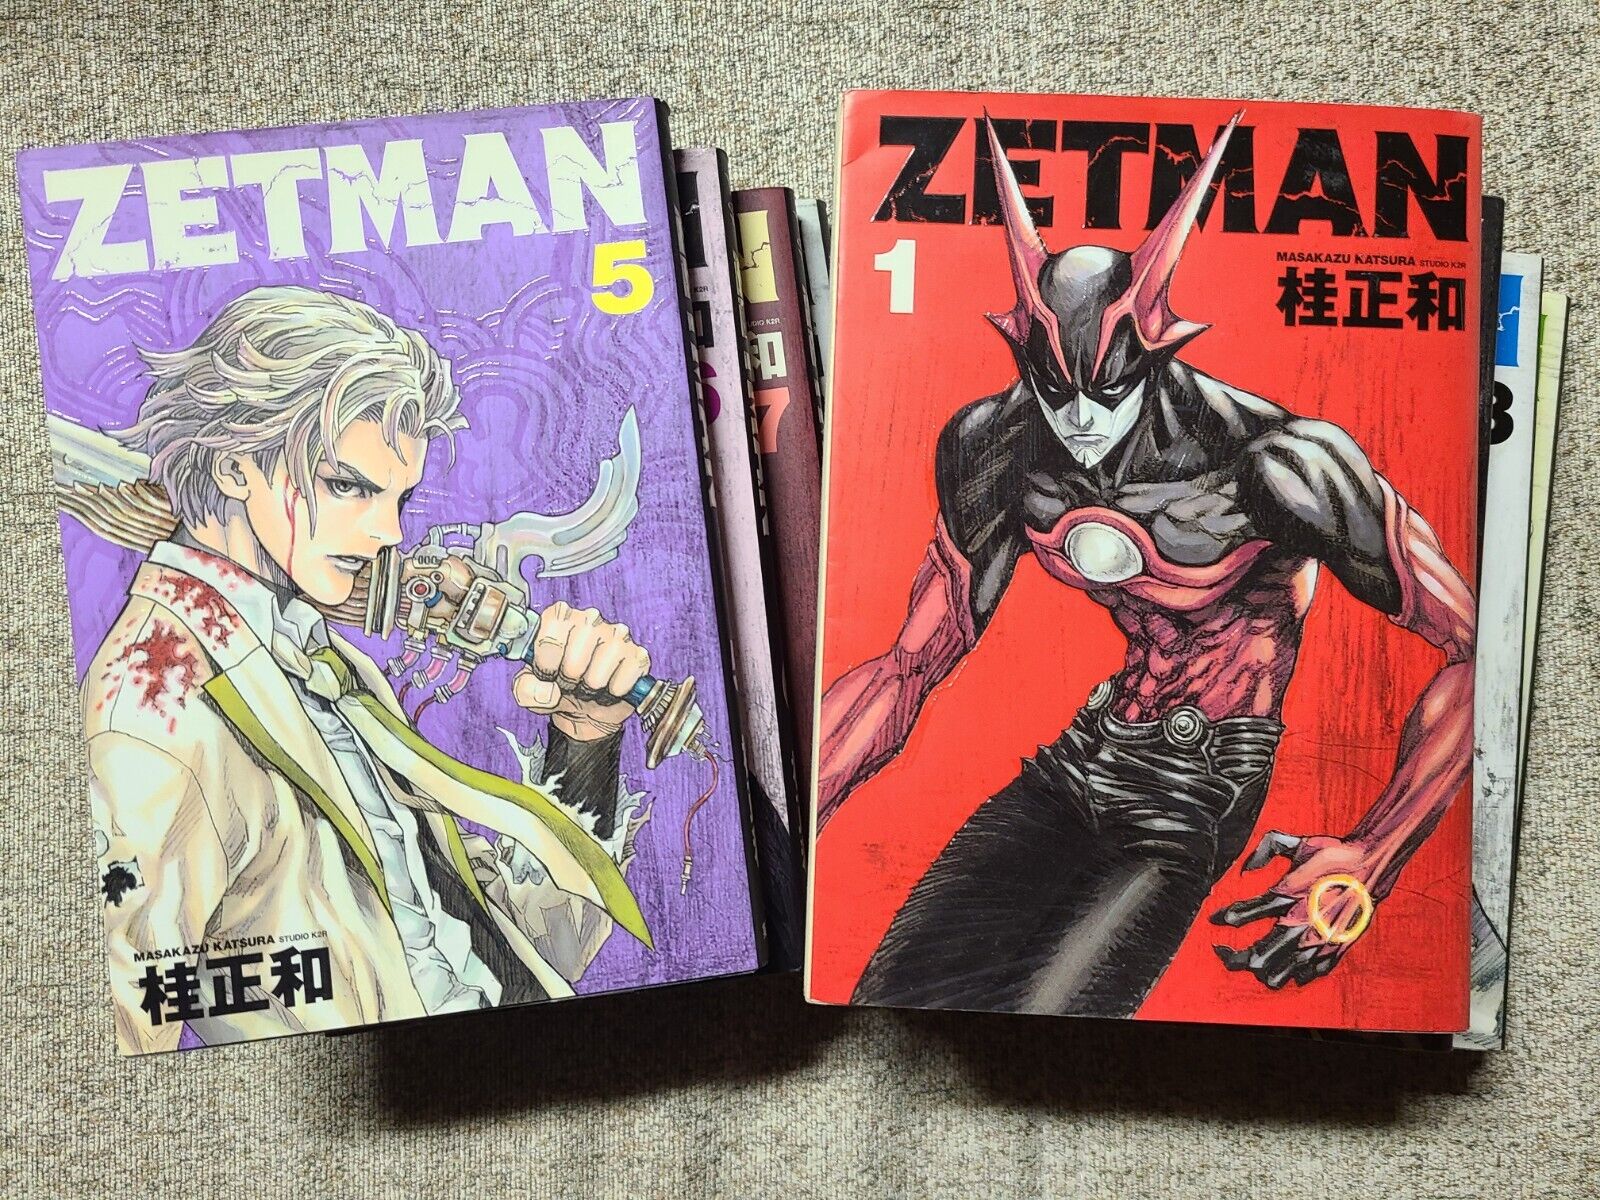 ZETMAN Japanese Manga Comic Masakazu Katsura  Volumes 1-9 & 11-17. 